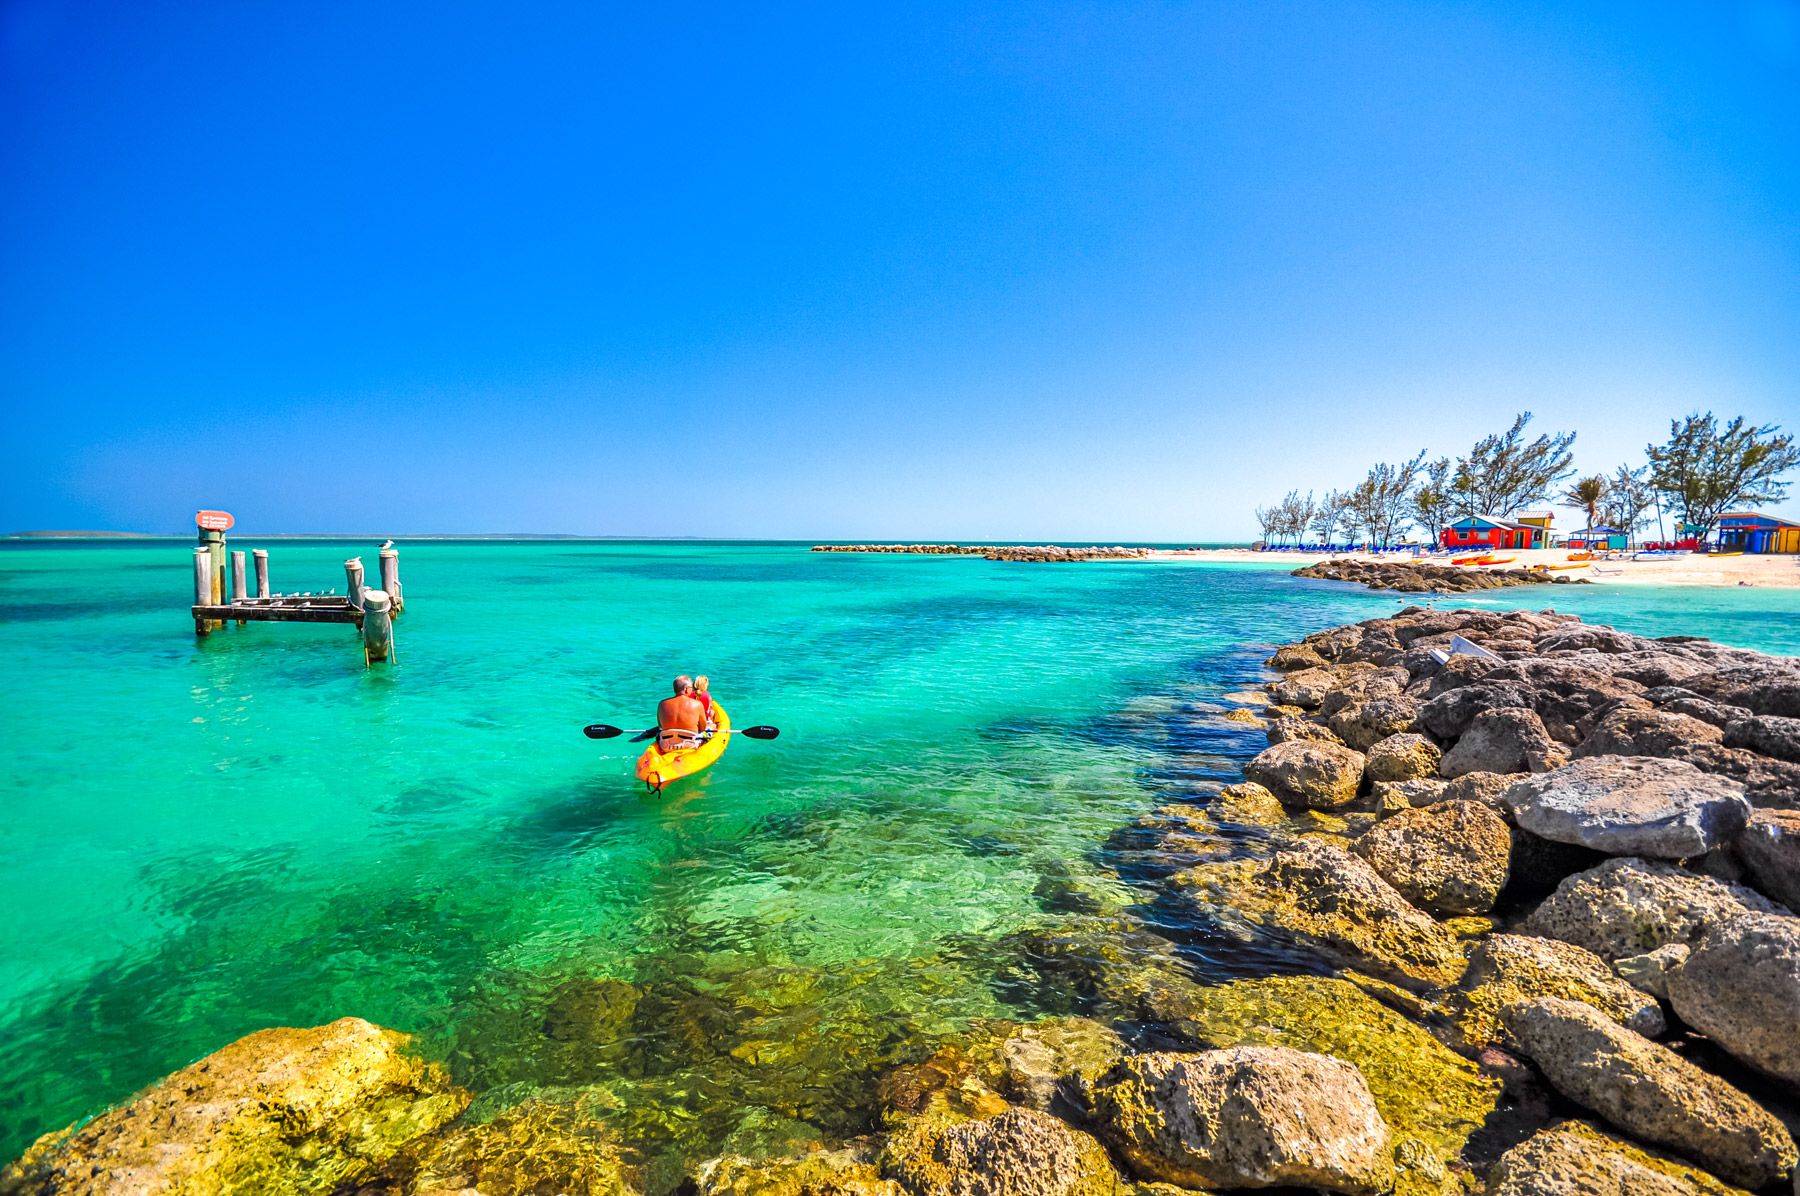 Kayaking in Bahamas